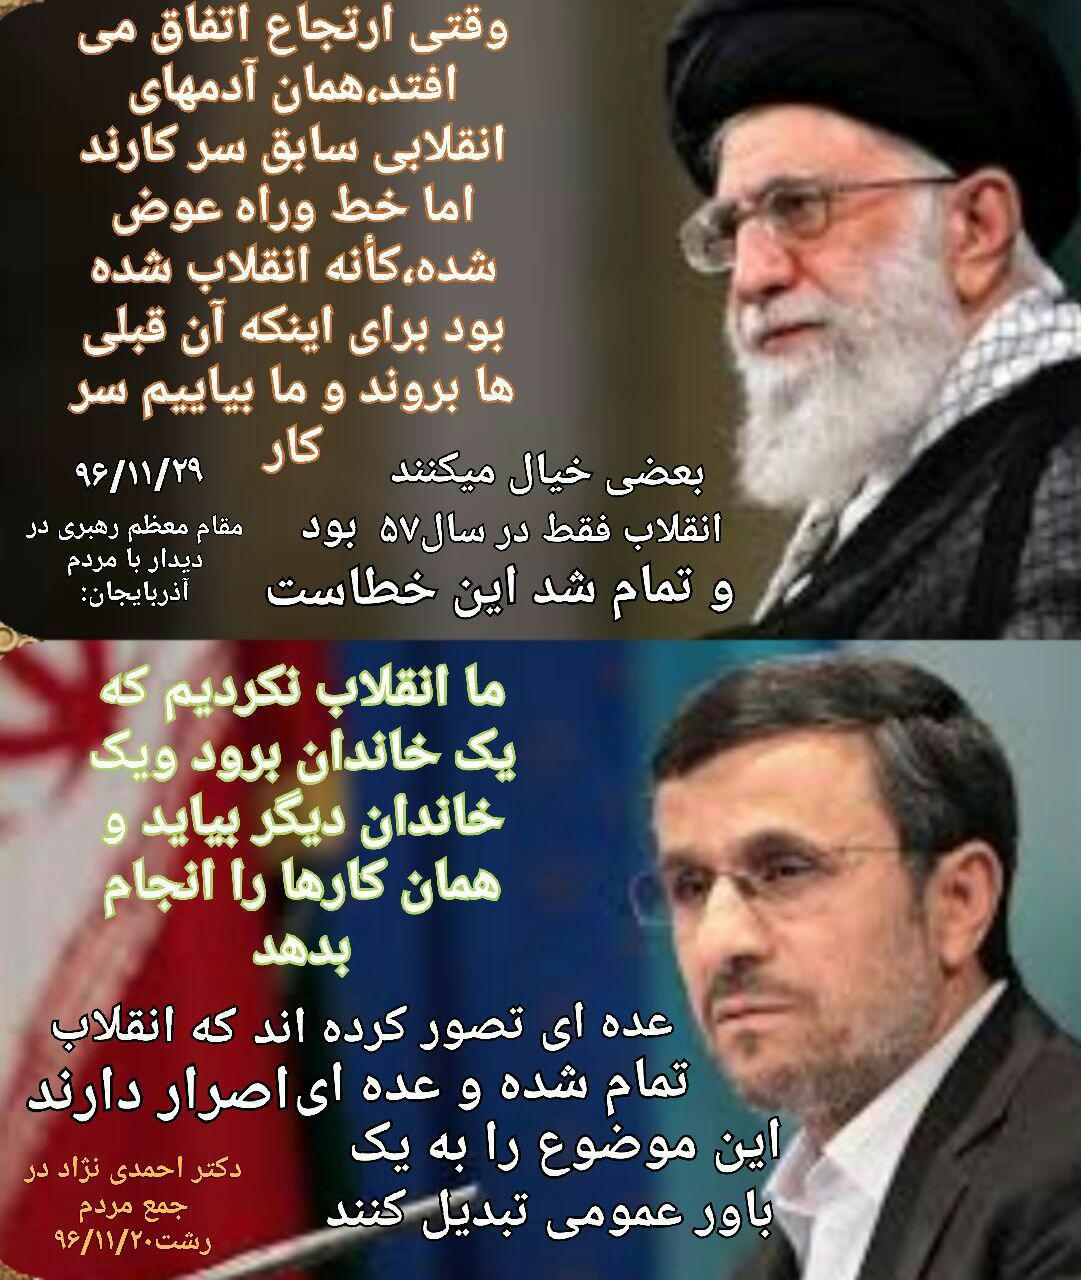 شباهت معنادار سخنرانی اخیر رهبری و احمدی نژاد